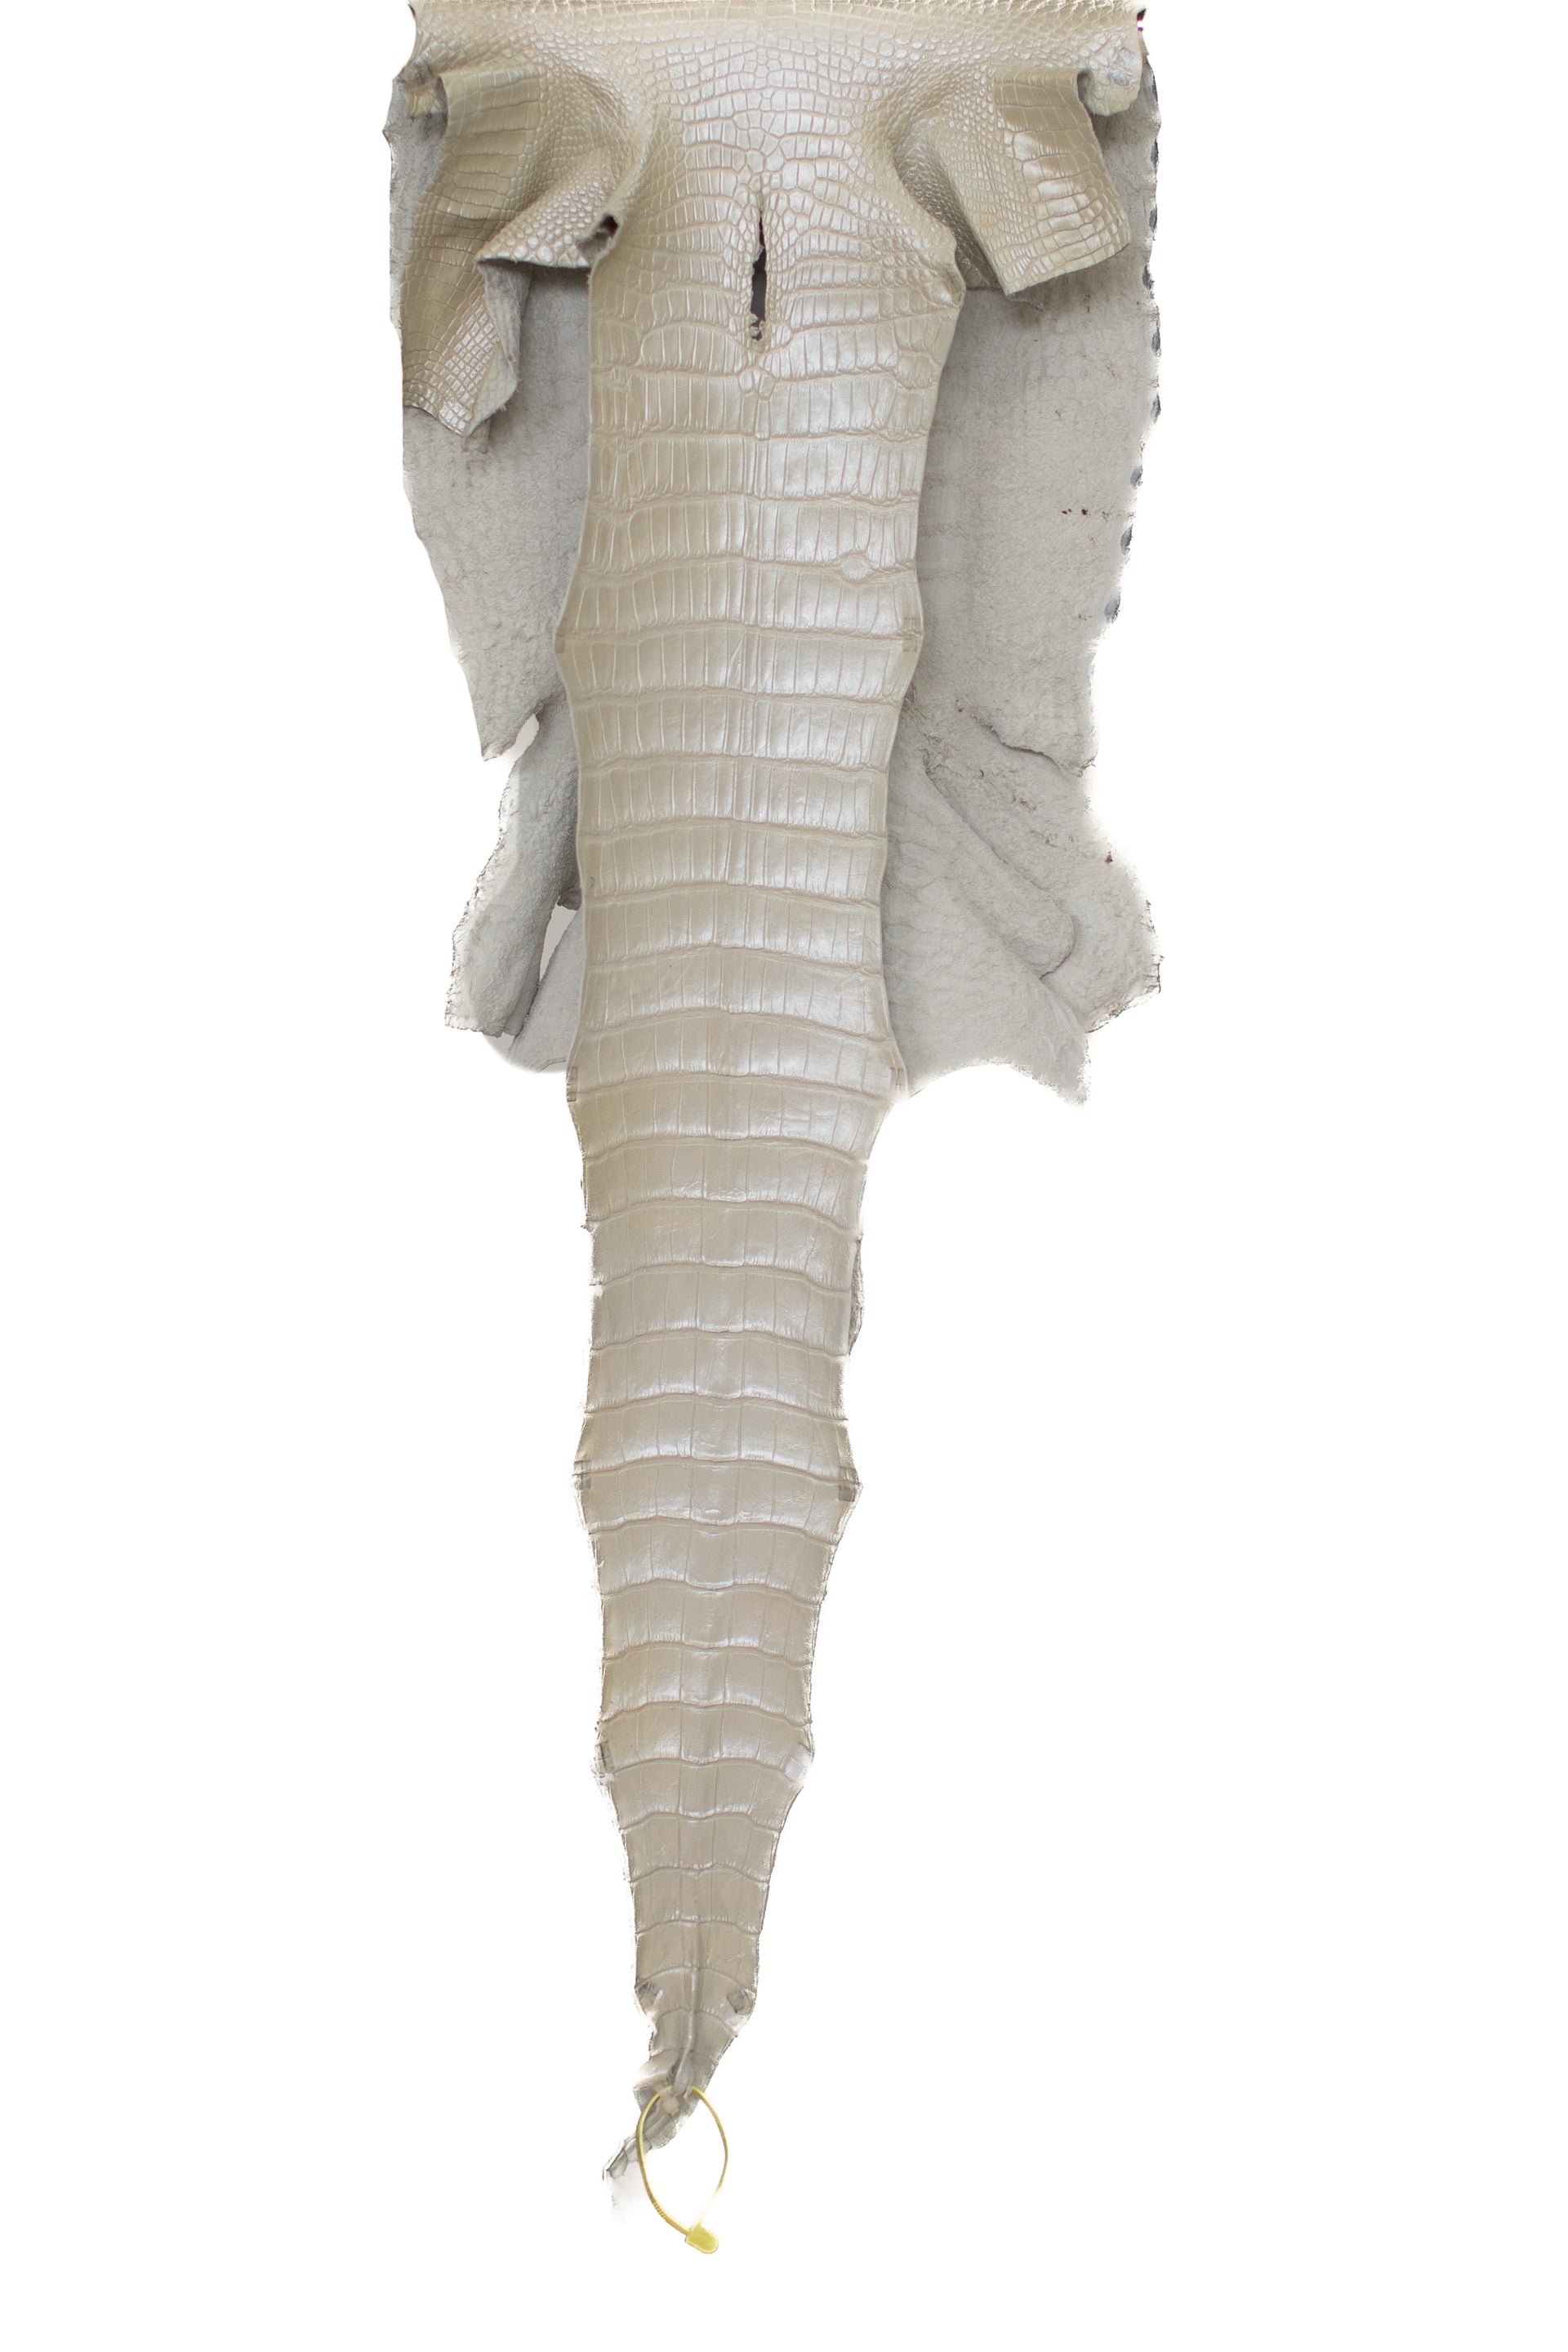 36 cm Grade 1 Ivory Pearl Matte Wild American Alligator Leather - Tag: LA19-0037473